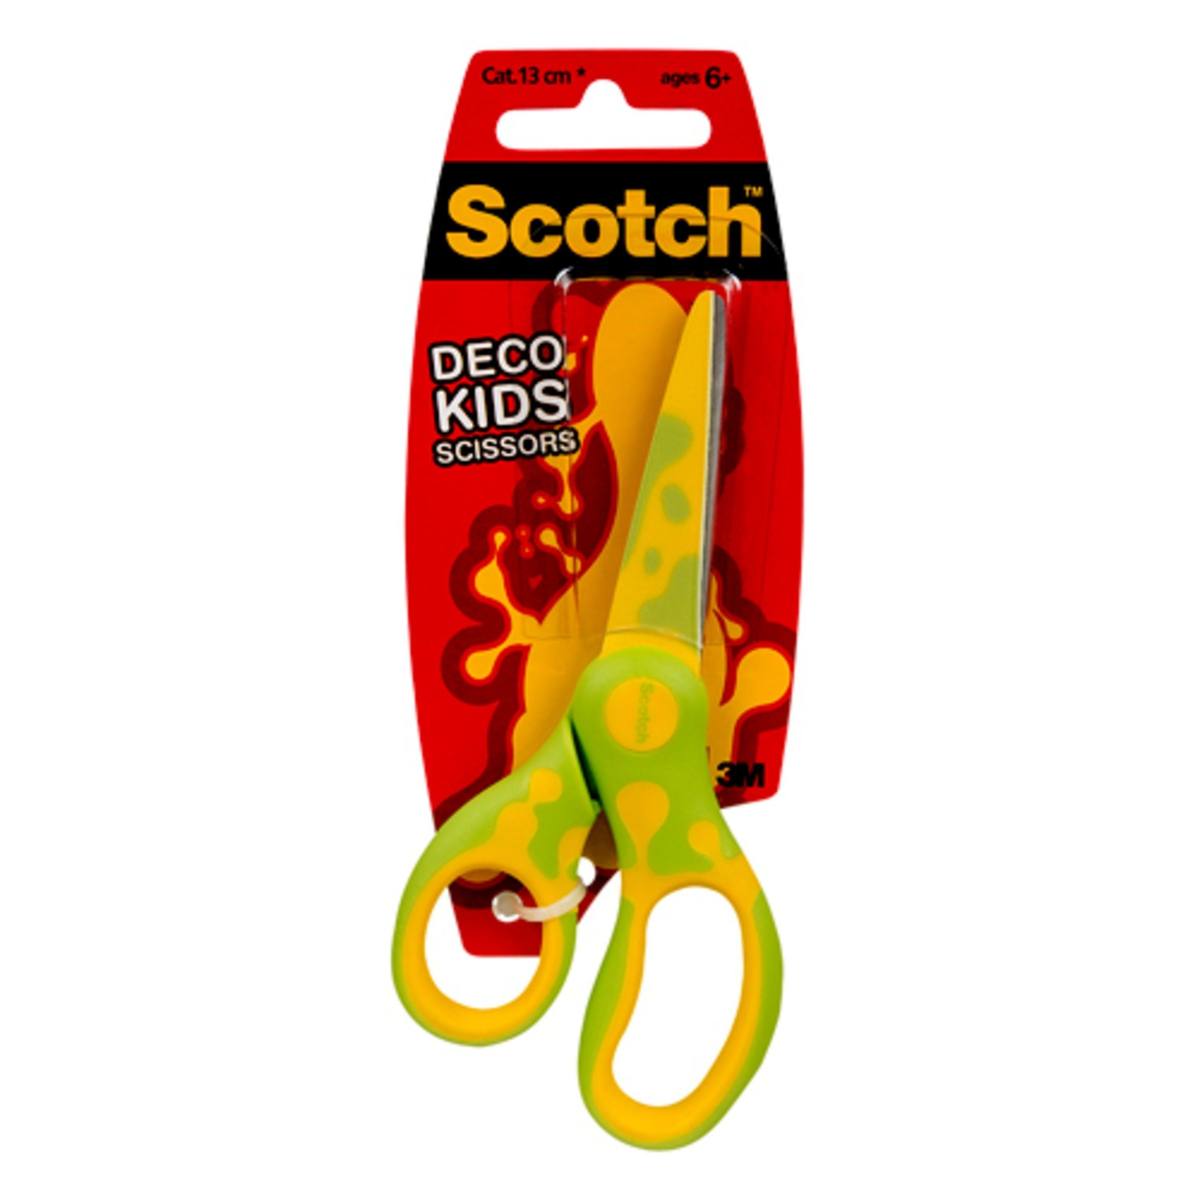  3M Scotch DECO lasten sakset eri malleja Mallit (vihreä, sininen tai vaaleanpunainen) 1 kpl/pakkaus 13 cm